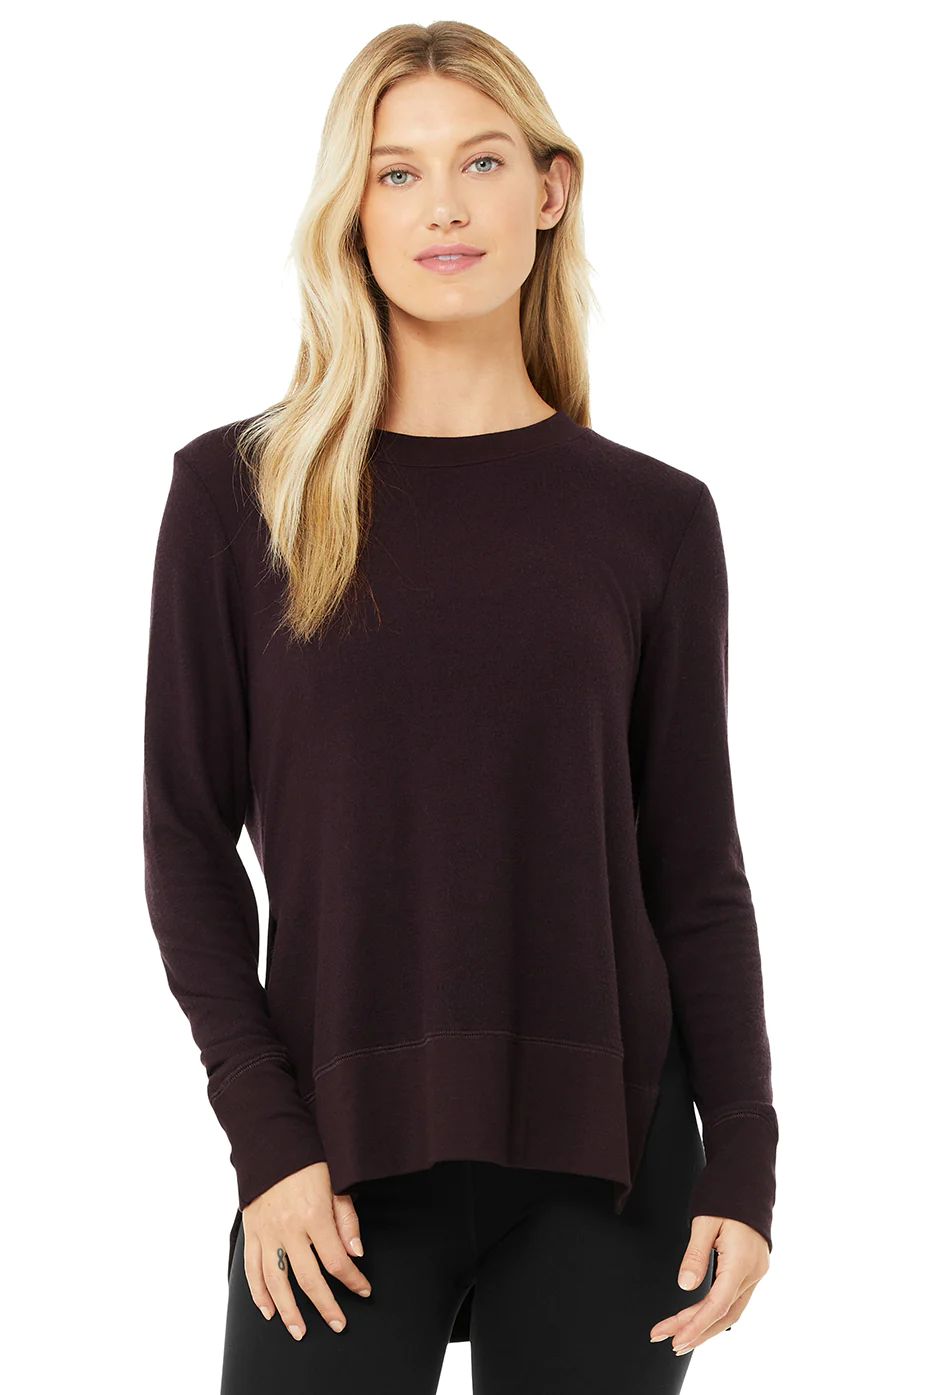 Glimpse Long Sleeve Sweatshirt in Oxblood, Size: XS | Alo YogaÂ® | Alo Yoga